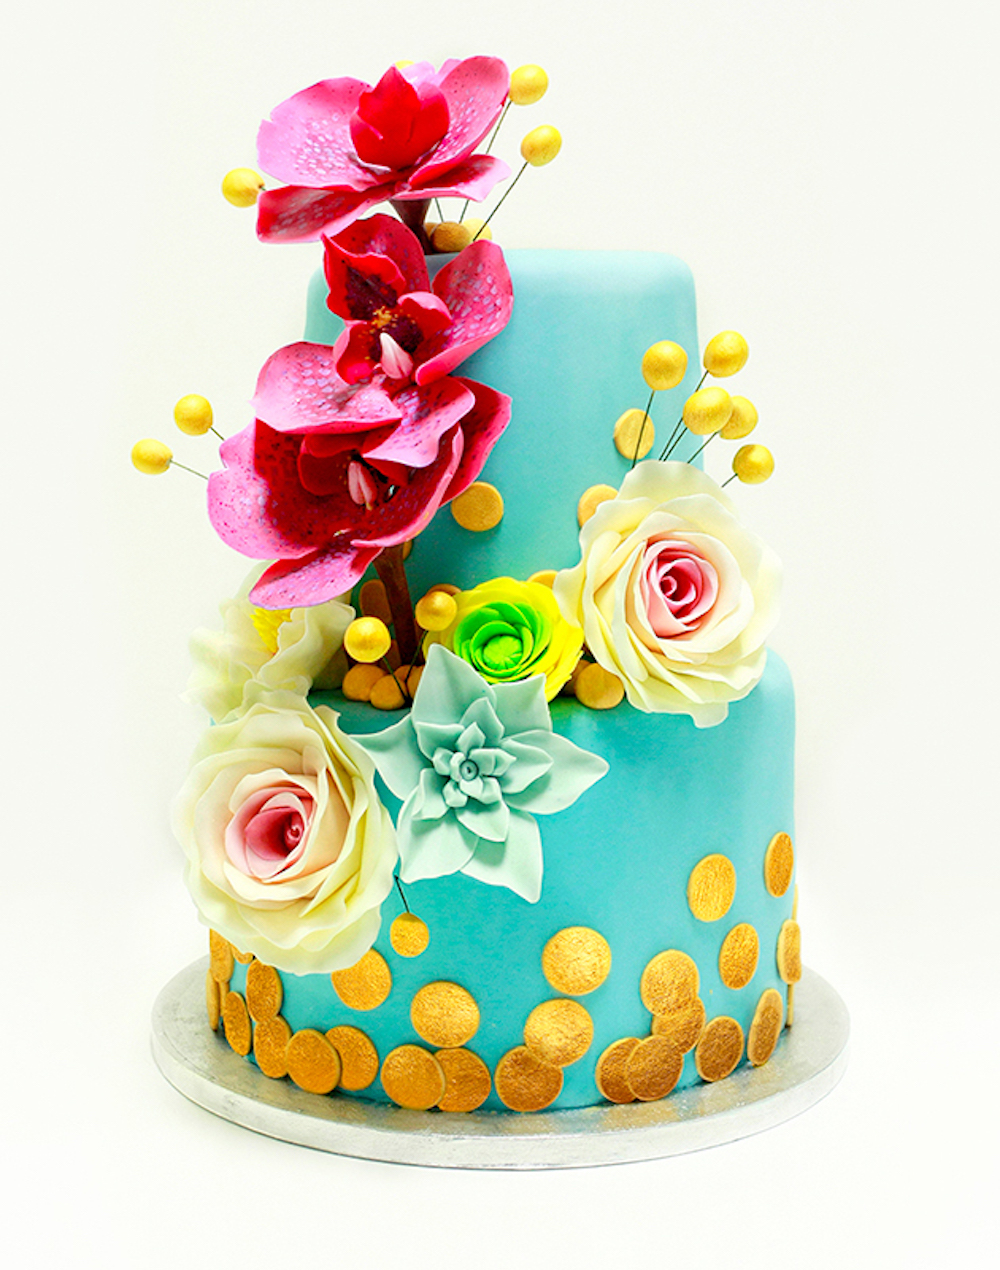 Свадебный торт "Мой один день" в цвете Тиффани с декором из сахарных орхидей и конфетти покрытых пищевым золотом